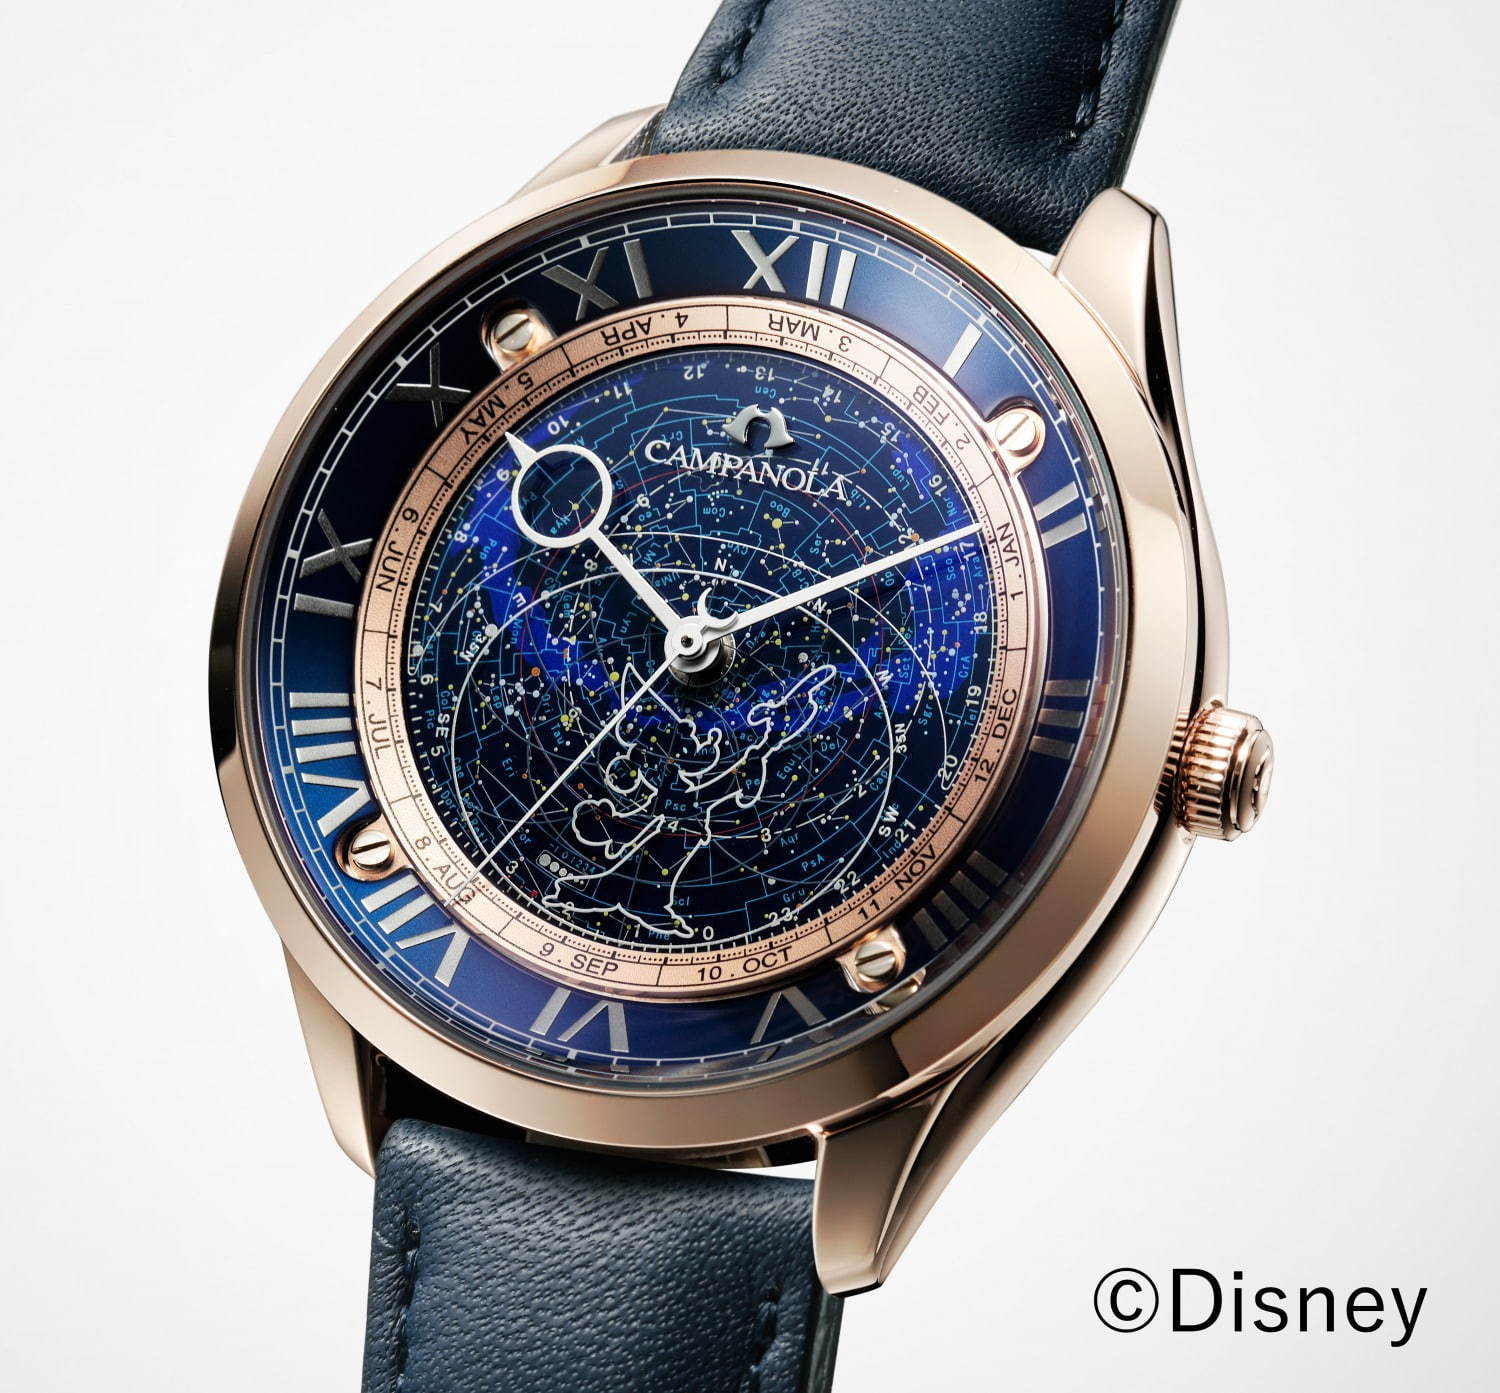 ディズニー ファンタジア モチーフの腕時計がカンパノラから 満点の星空 イメージの文字板 ファッションプレス